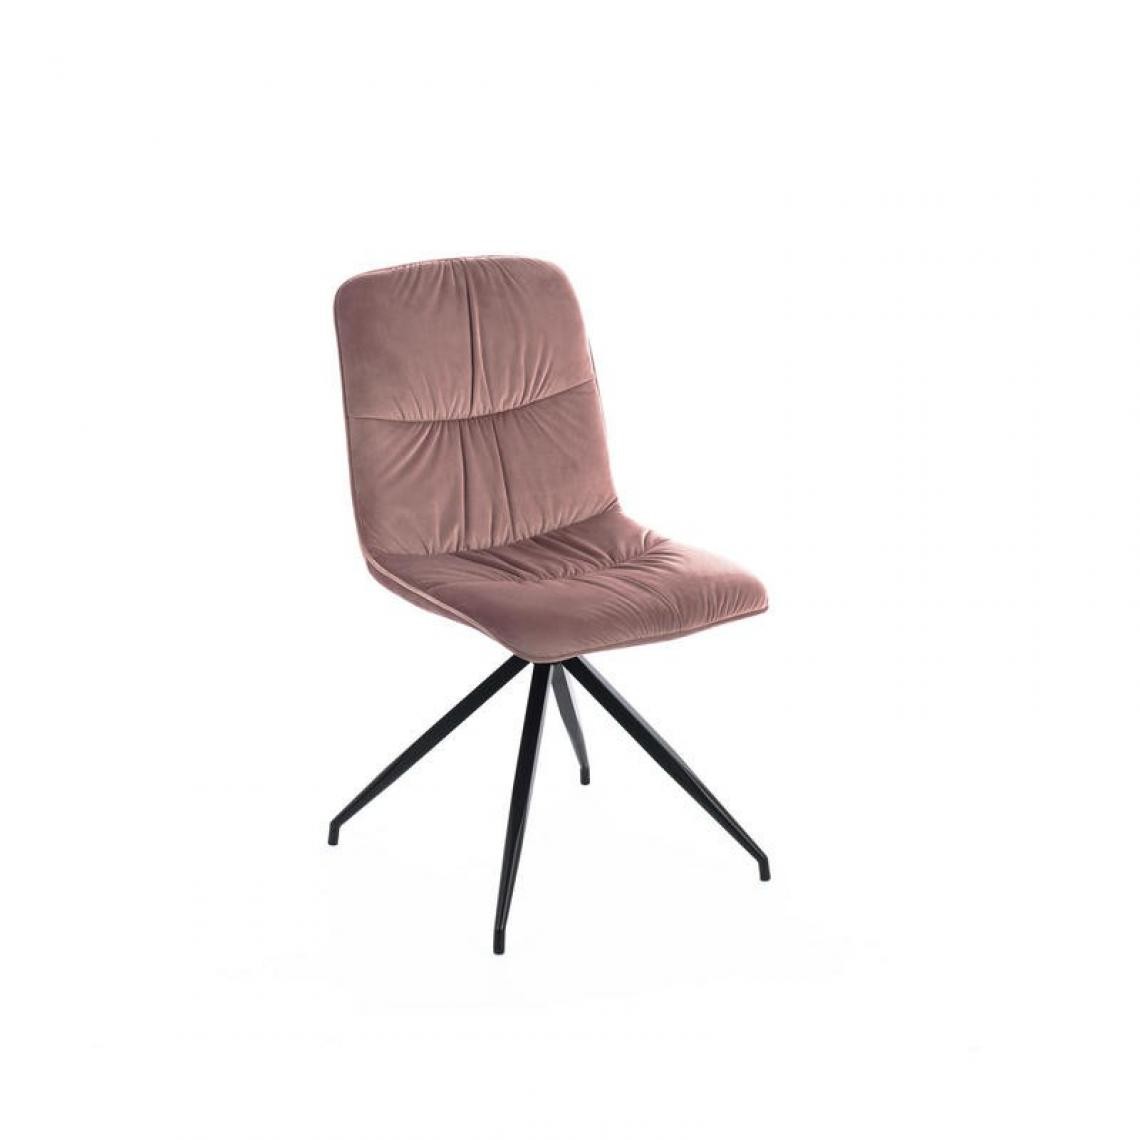 Webmarketpoint - Chaise en tissu microfibre effet velours rose antique 43x38xh. 86,5 cm - Chaises